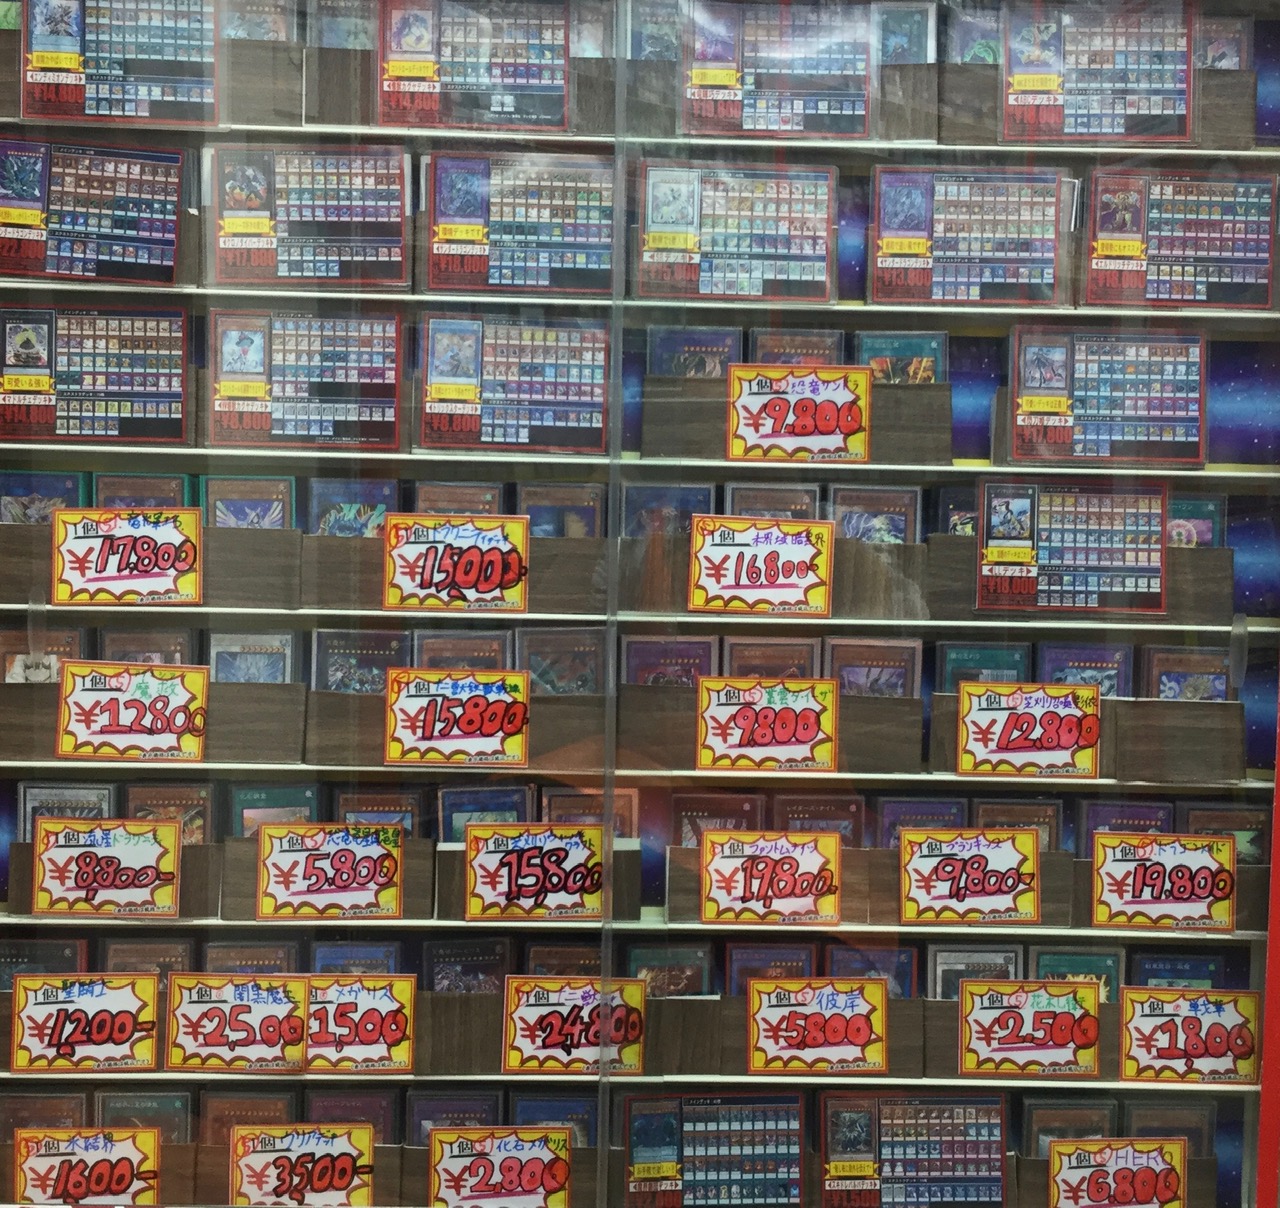 遊戯王 まずはここから始めよう 初心者向けのおすすめデッキを紹介します 21 5 28 サテライト名古屋店の店舗ブログ カードラボ